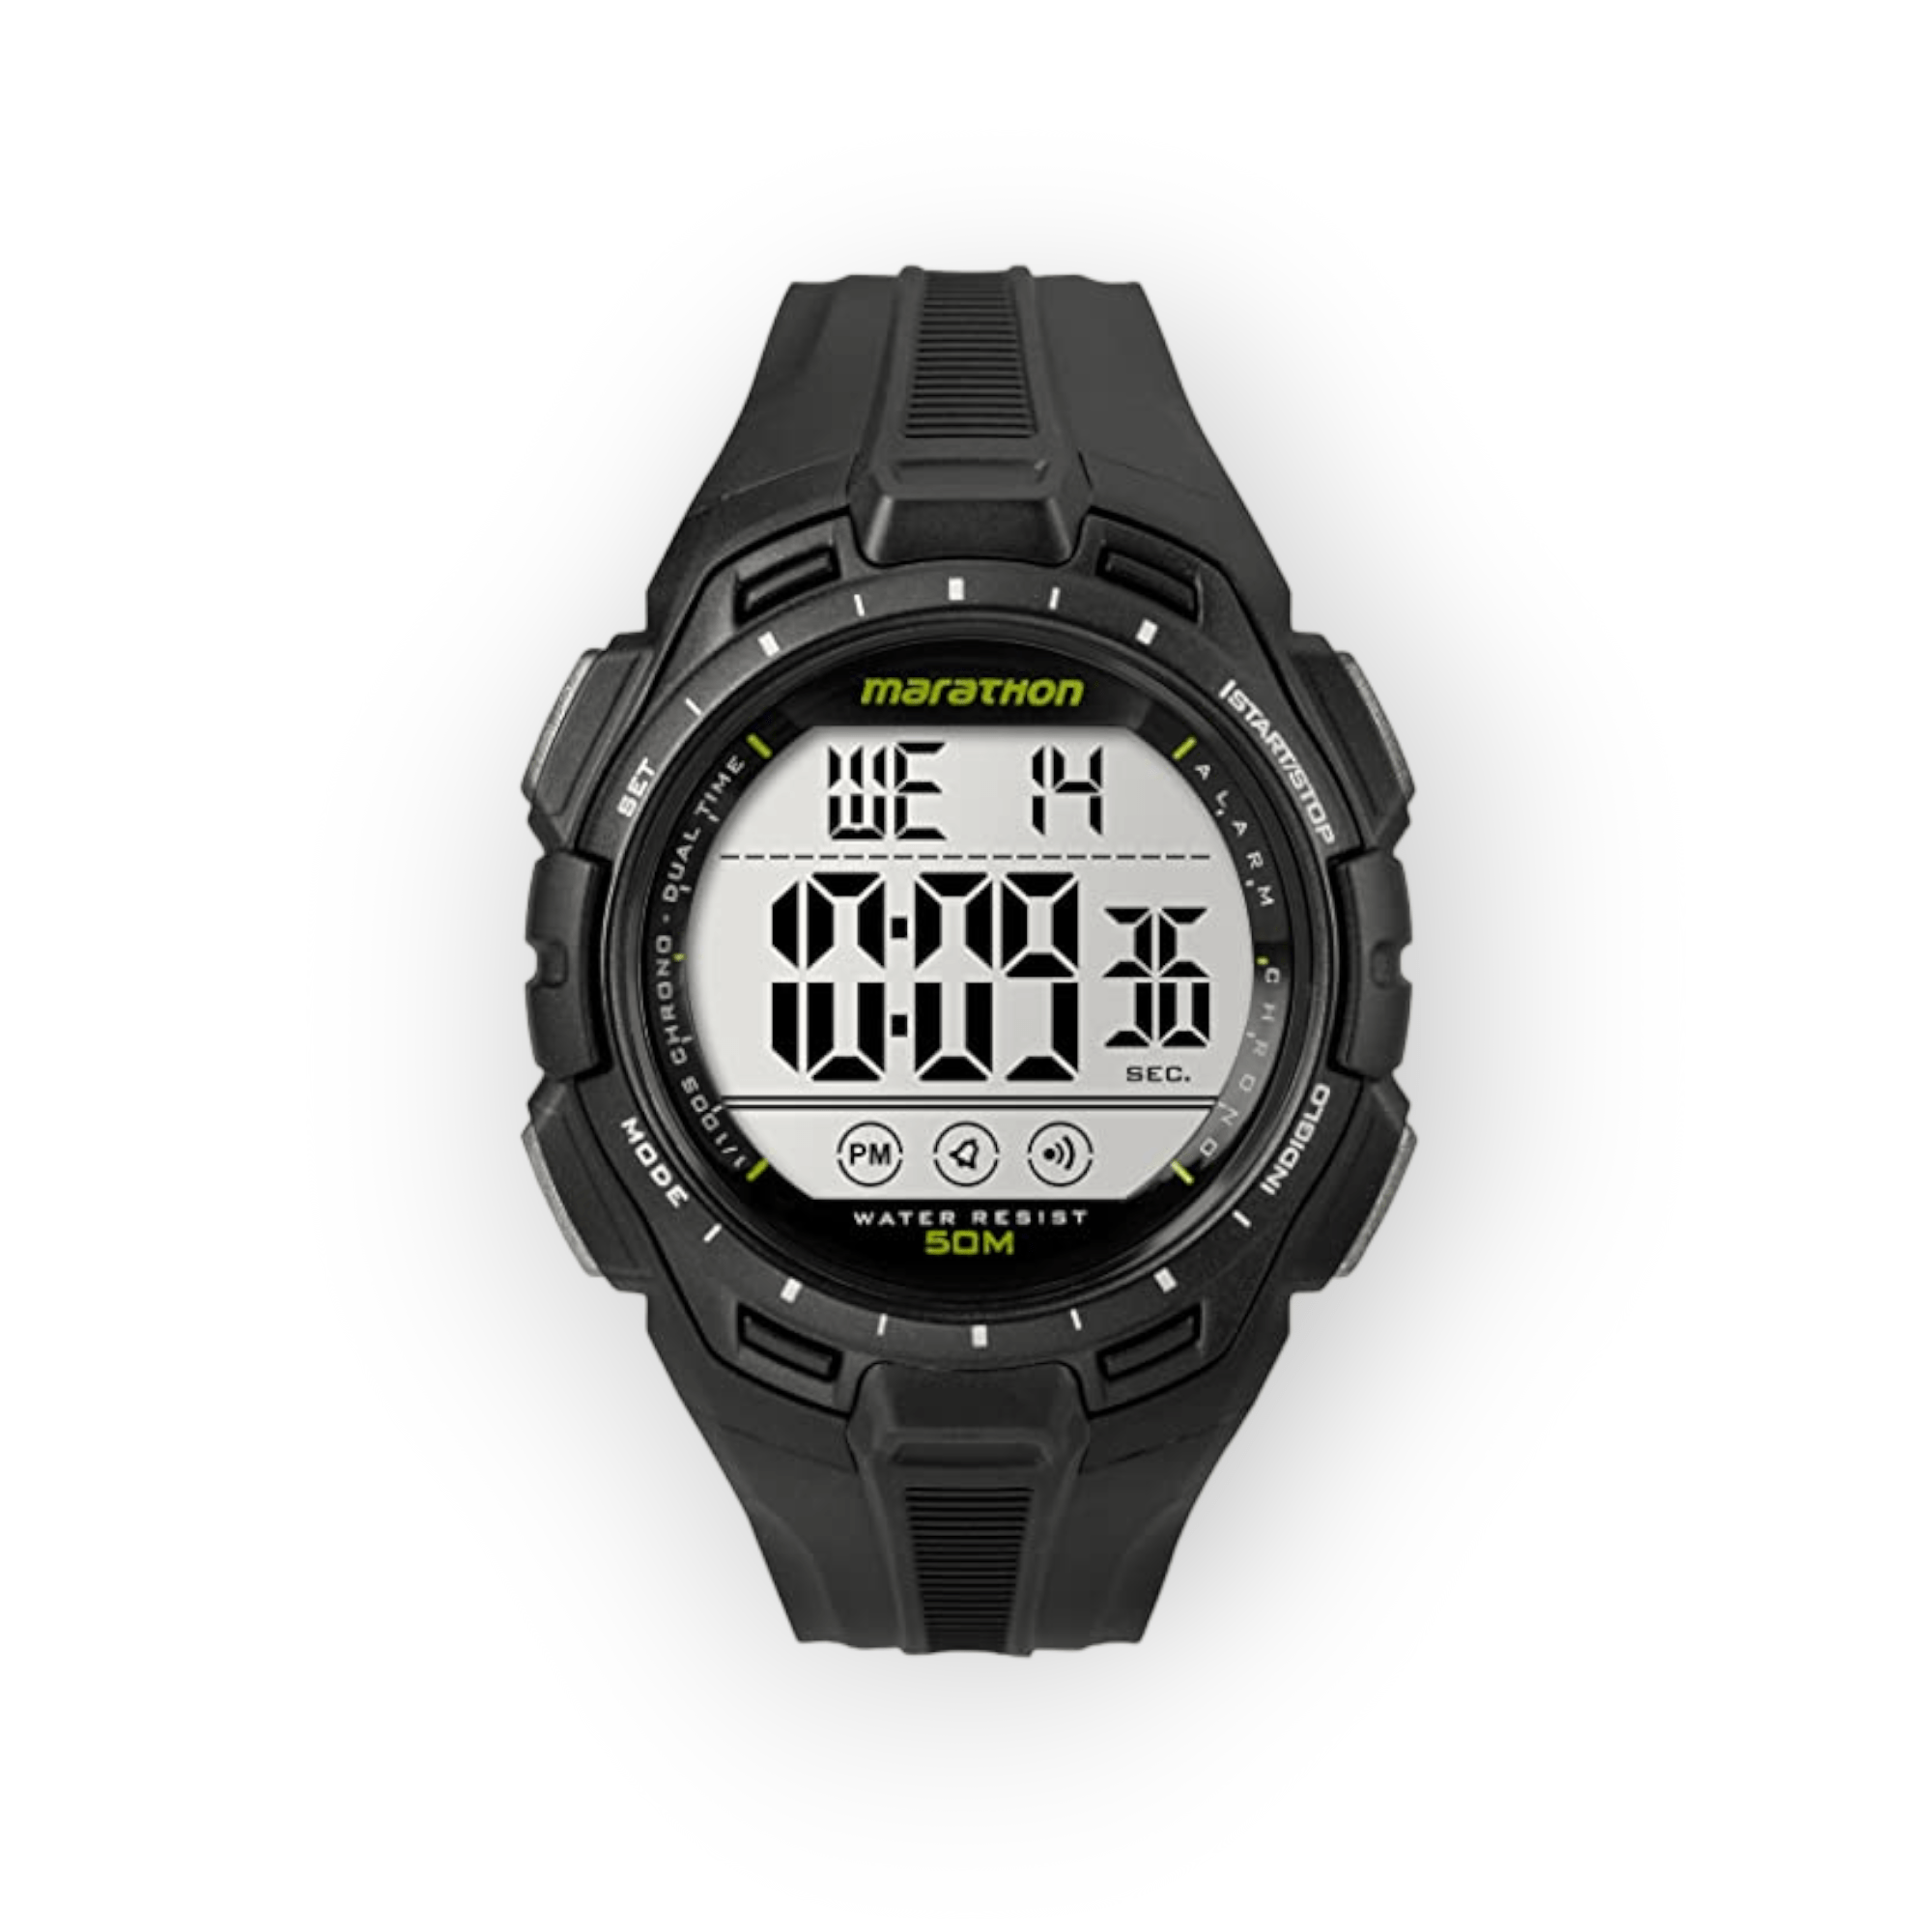 Marathon By Timex Digital